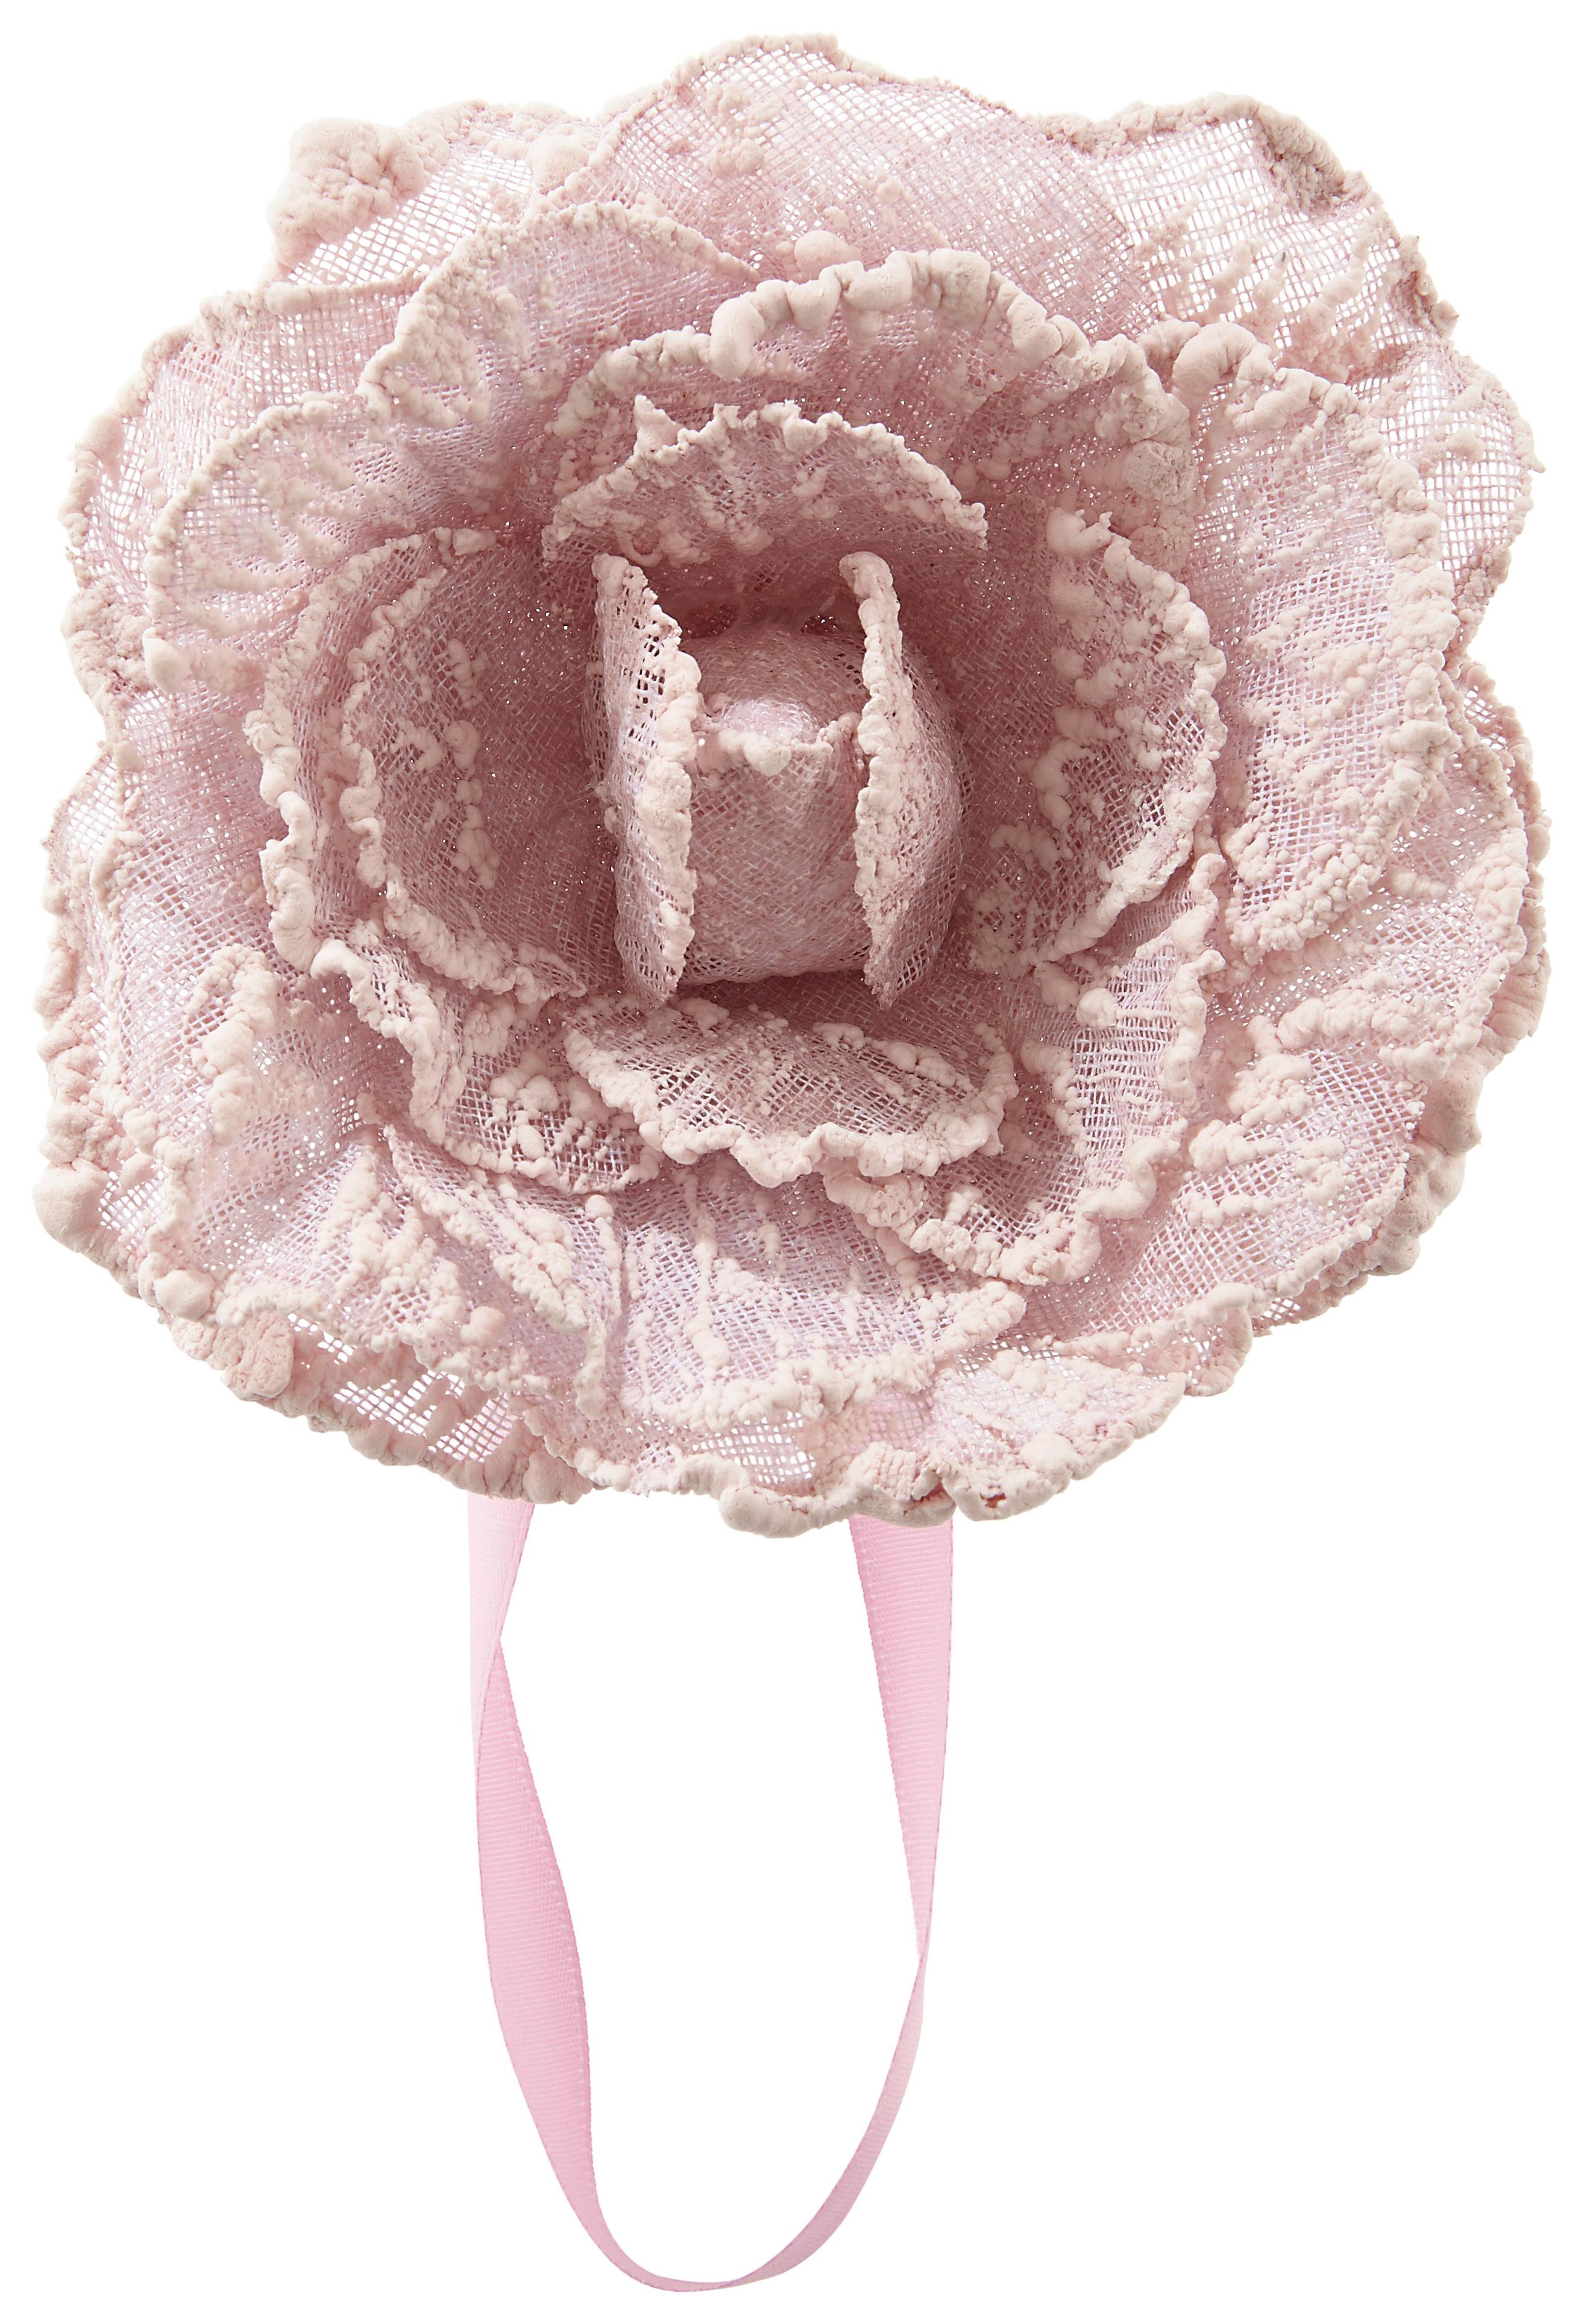 Úchytka Řasicí Rose - růžová, Romantický / Rustikální, textil (11cm) - Modern Living